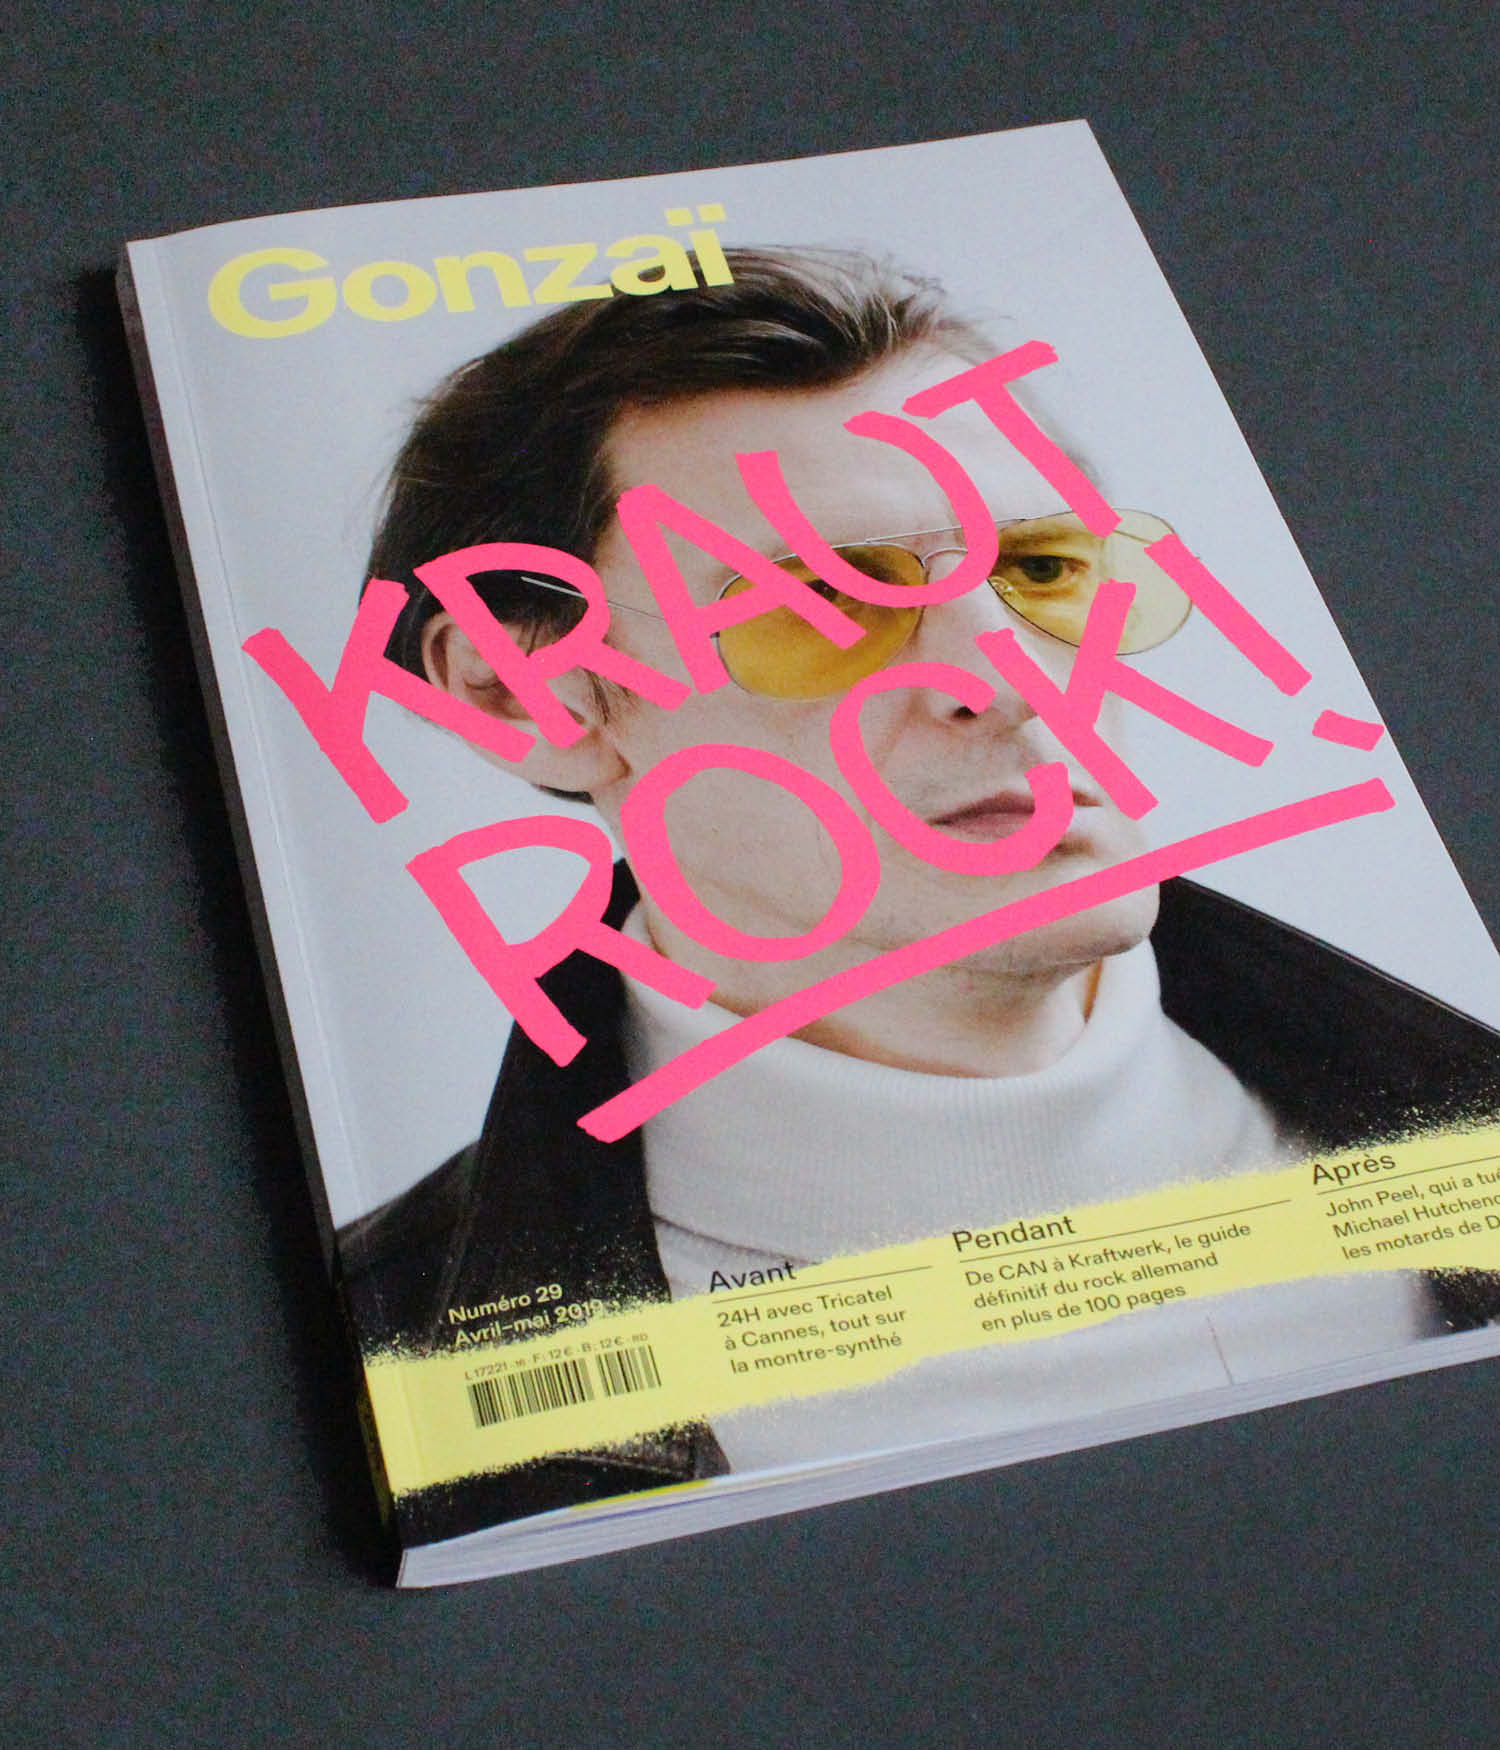 Gonzaï magazine, redesign for issue 29 Krautrock